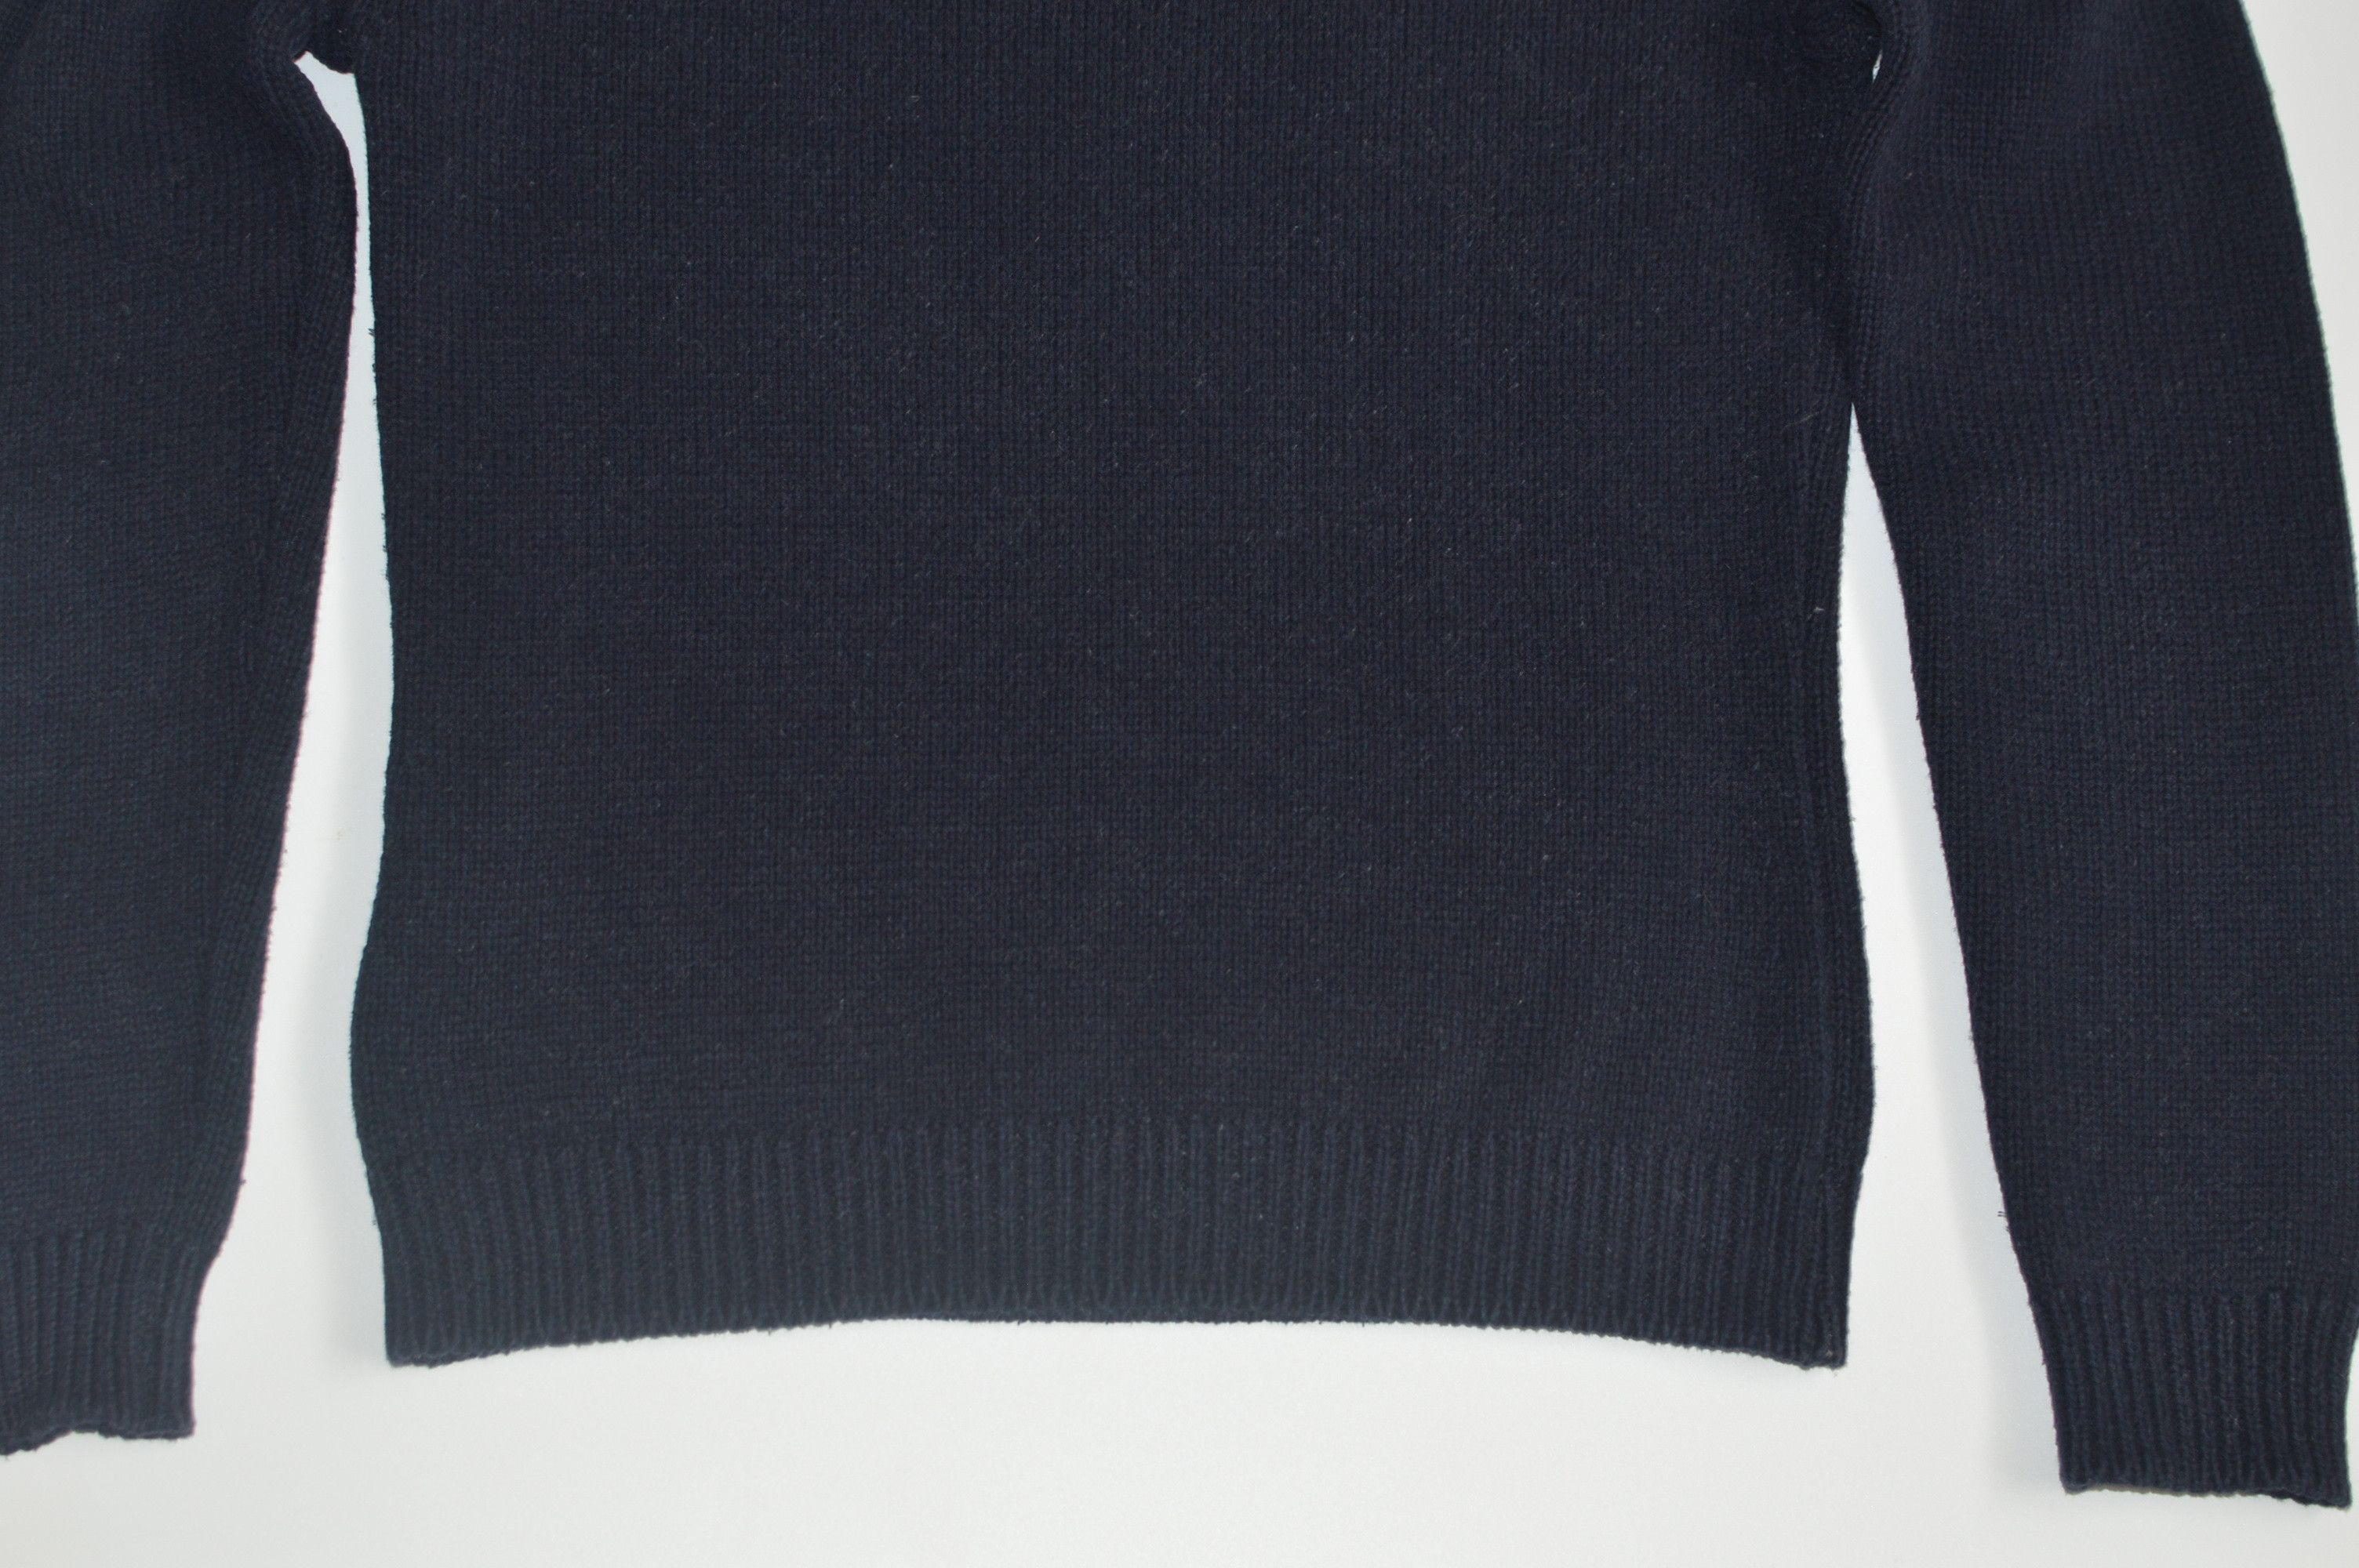 Vintage Vintage Thomas Burberry 1835 Sweater Wmns Size US S / EU 44-46 / 1 - 8 Preview